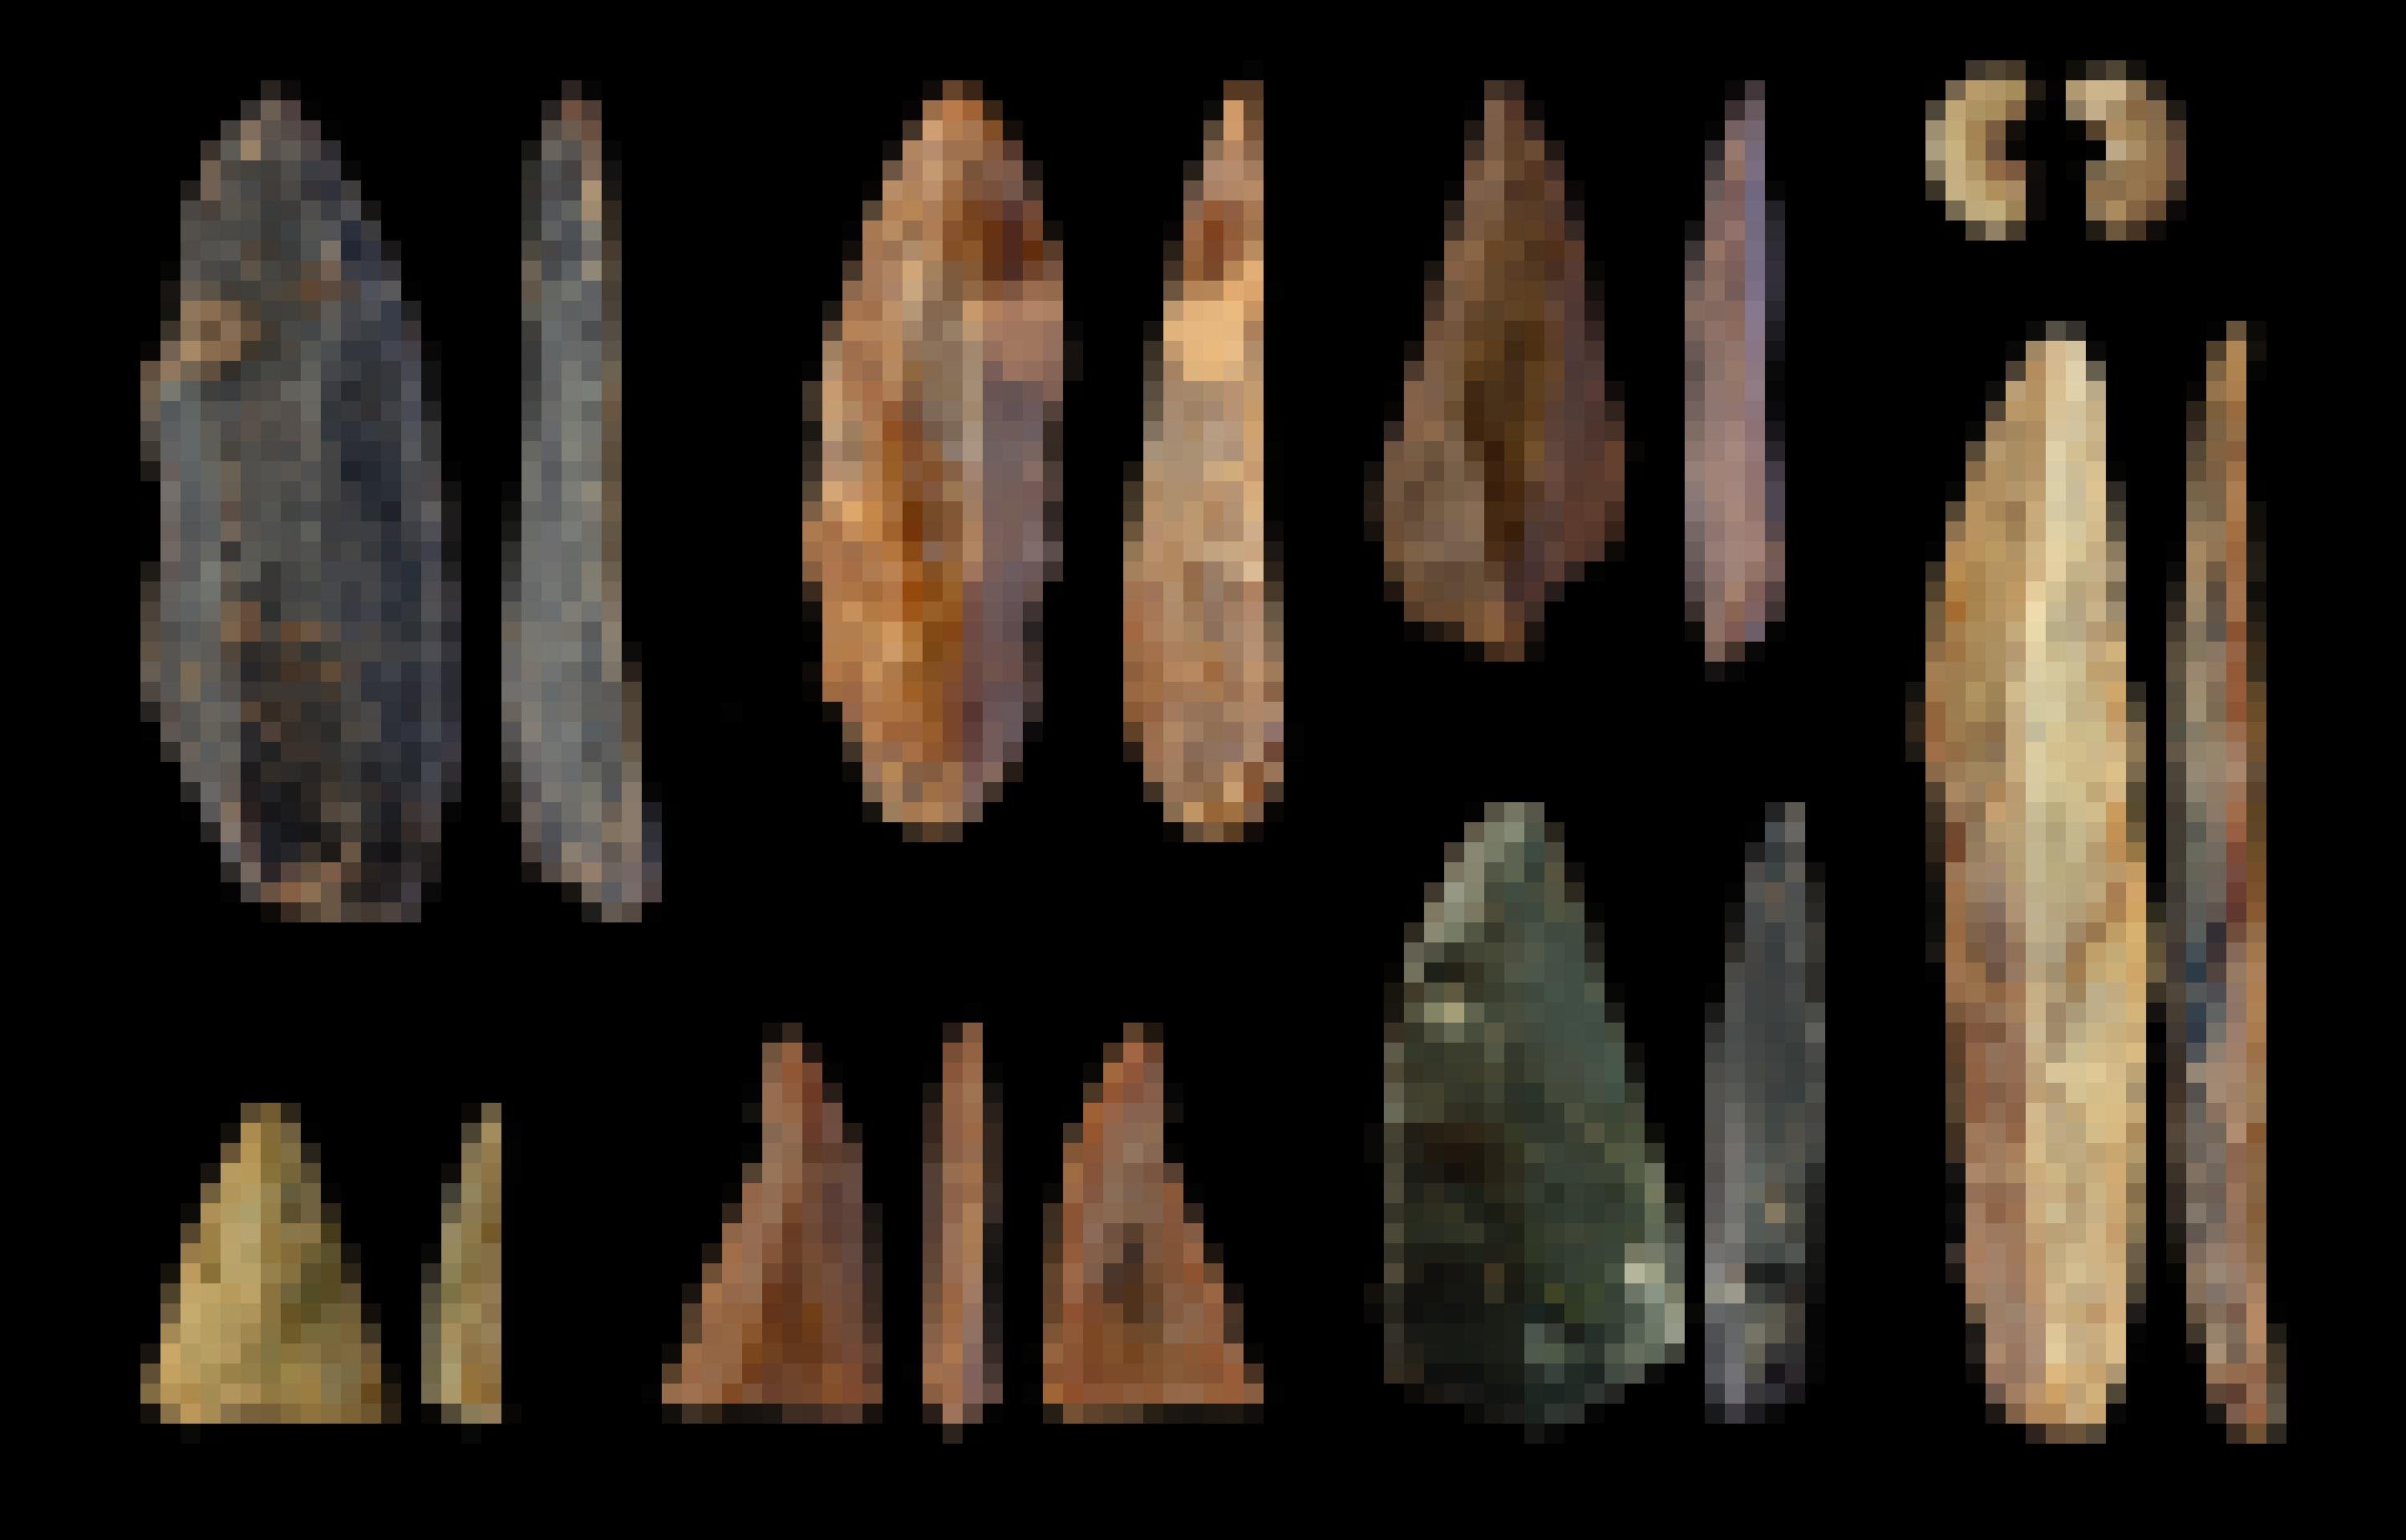 Auf schwarzem Hintergrund zu sehen sind verschiedene Klingen und Schaber aus Feuerstein, sowie rechts oben eine zerbrochene Perle aus Sandstein, die in der Mitte durchlocht ist. Die filigran zugeschlagenen Stein-Objekte zeigen Farbtöne von fast schwarz, über grünlich, orange, rötlich und gelb.